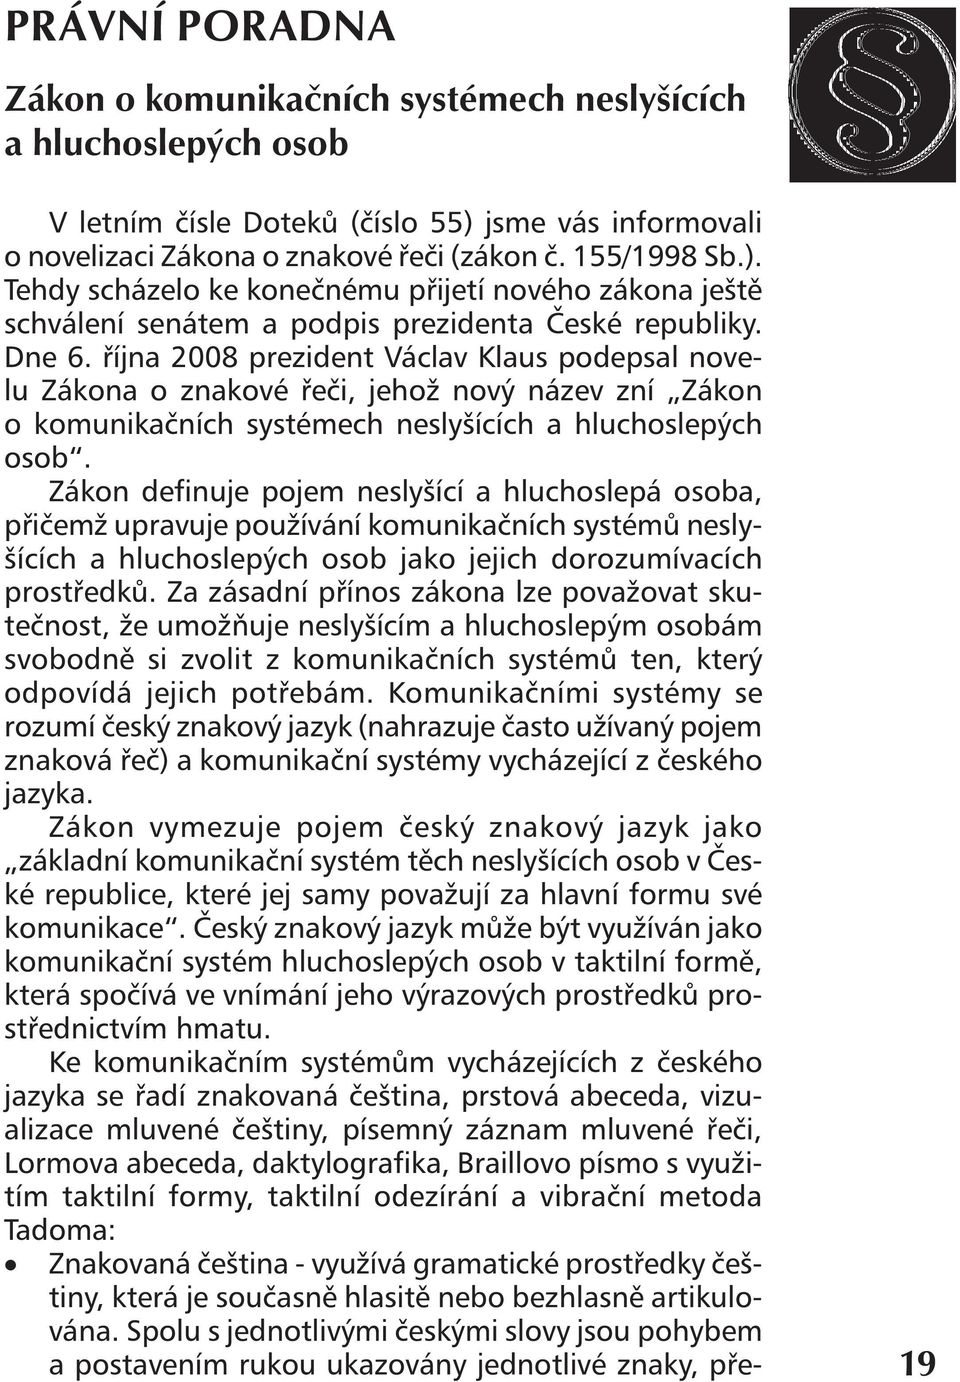 října 2008 prezident Václav Klaus podepsal novelu Zákona o znakové řeči, jehož nový název zní Zákon o komunikačních systémech neslyšících a hluchoslepých osob.